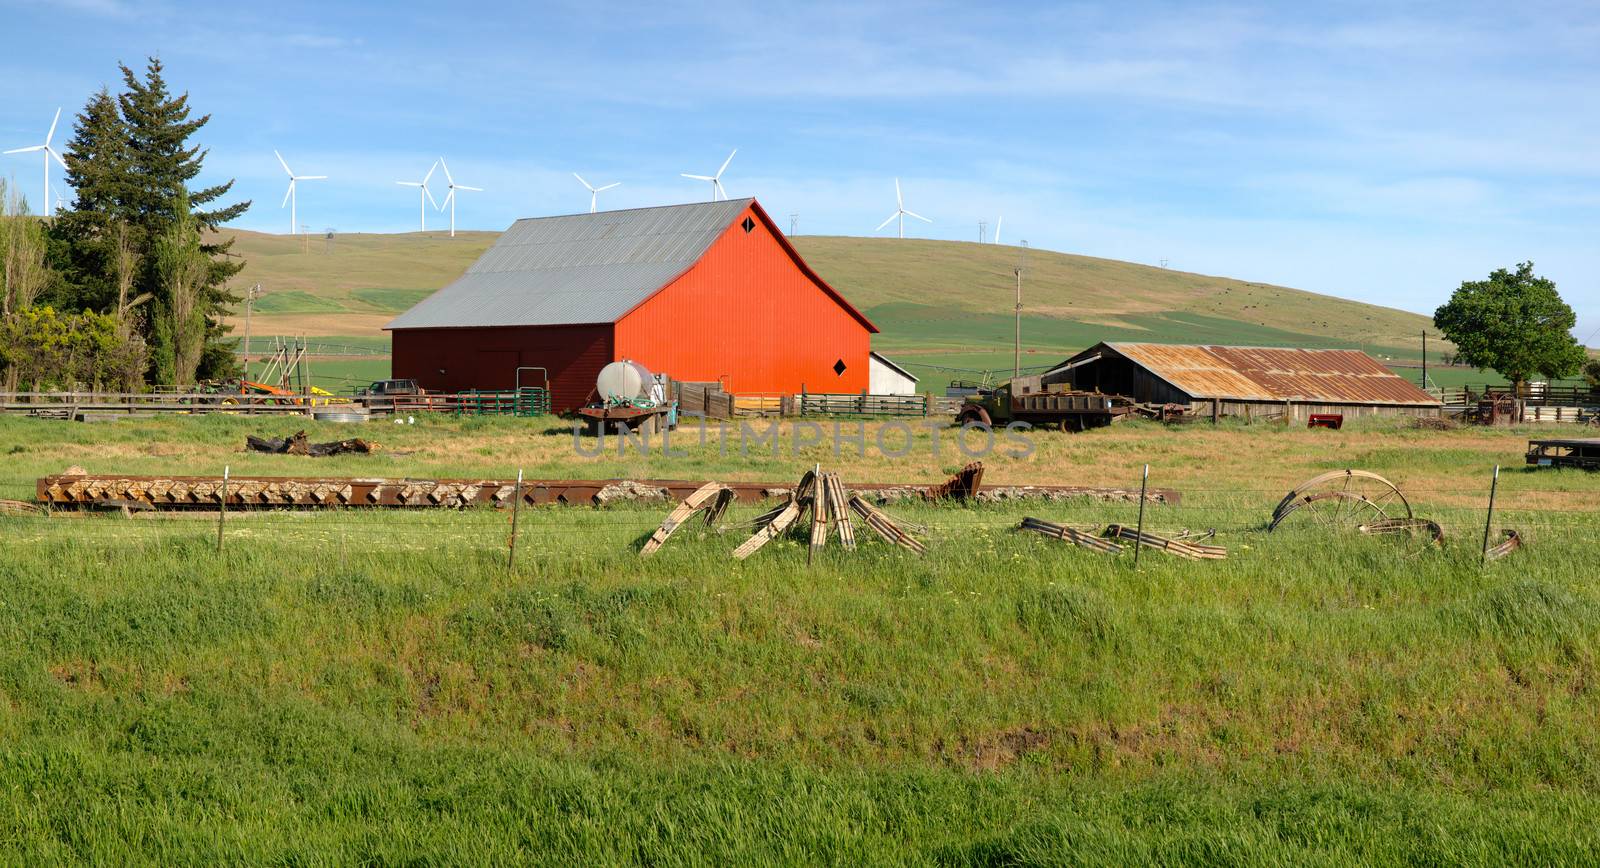 Red barn in a country farm eastern Washington PNW.